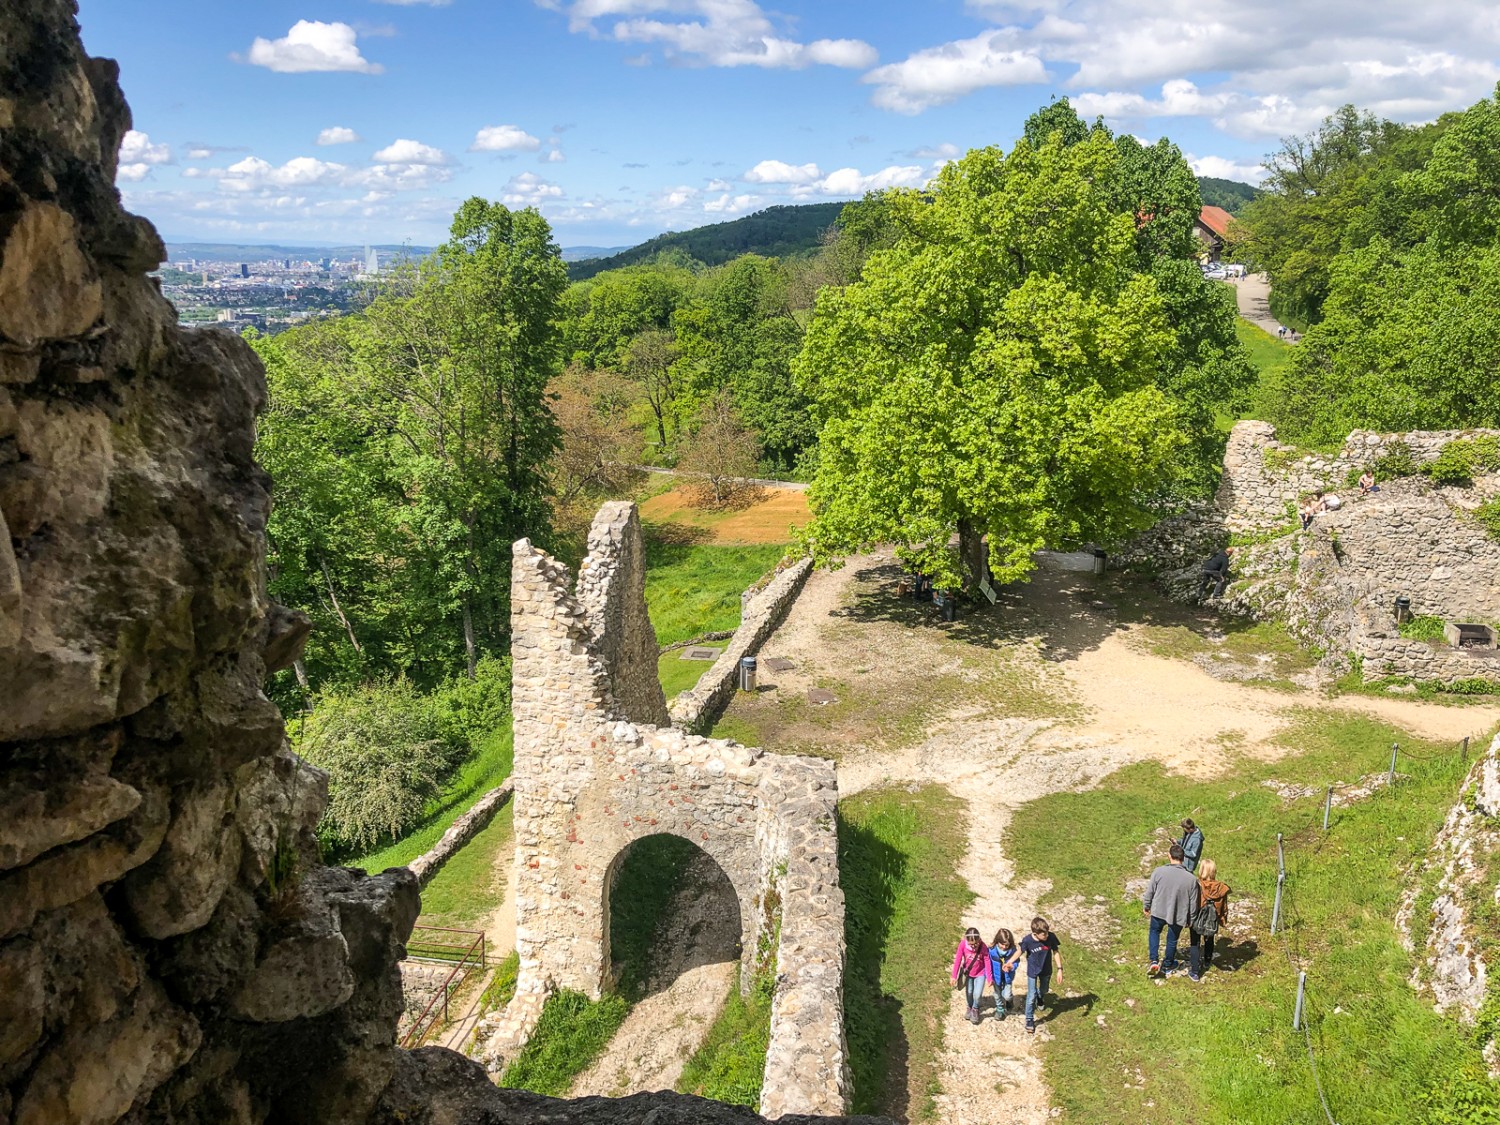 Nelle rovine del castello di Dorneck c’è molto da scoprire e angolini fantastici per giocare a nascondino. Foto: Thomas Gloor